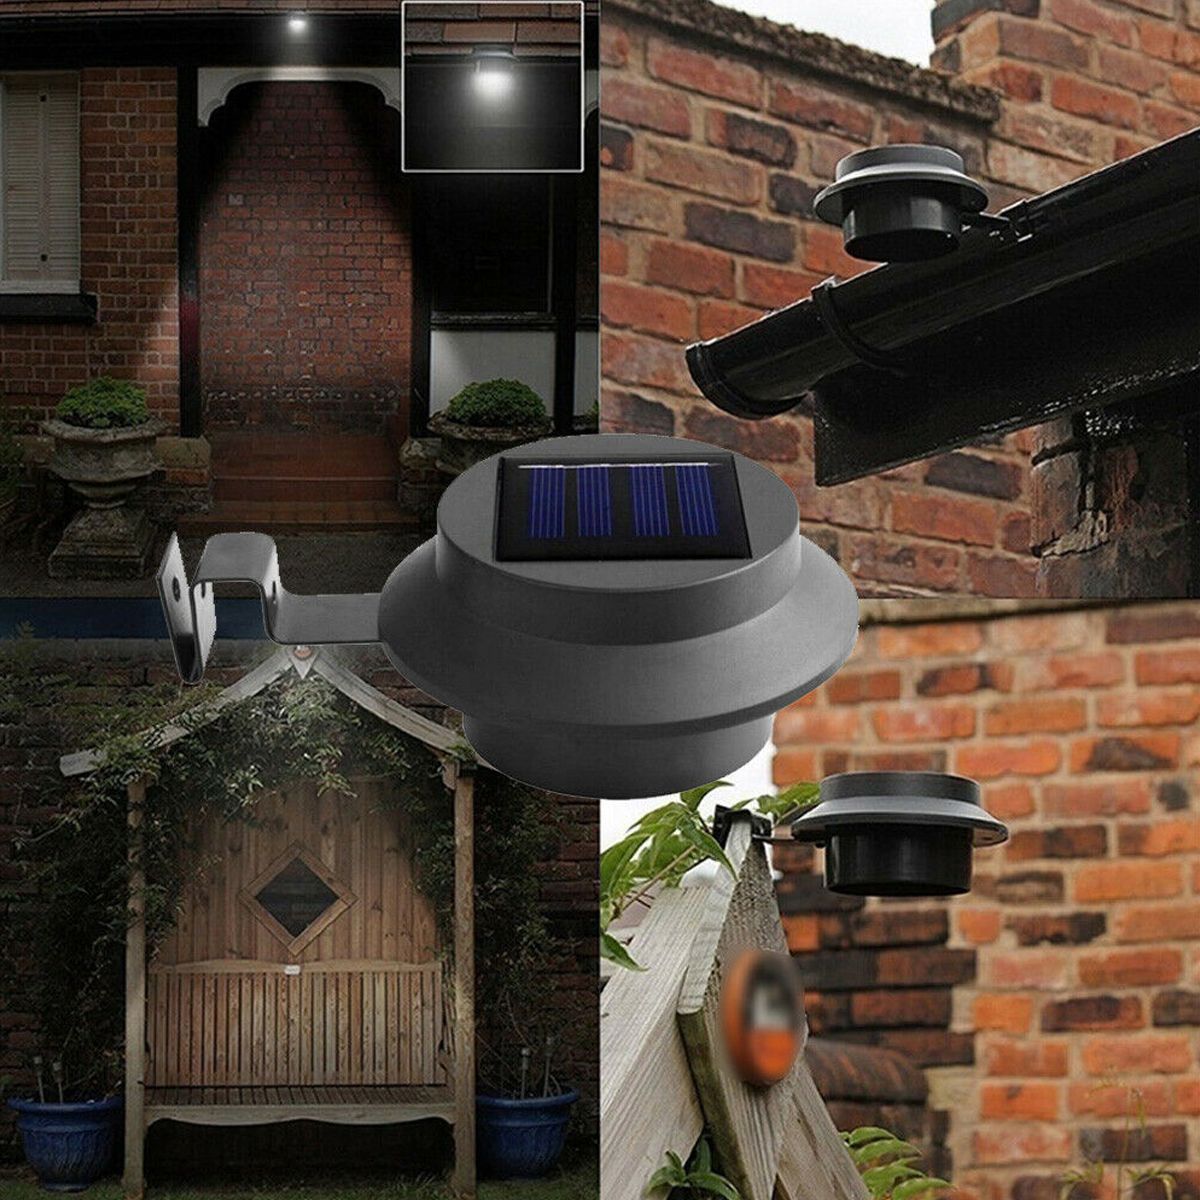 LED-Solar-Gutter-Light-Waterproof-Outdoor-Fence-Street-Garden-Yard-Pathway-Lawn-Sink-Wall-Lamp-1738519